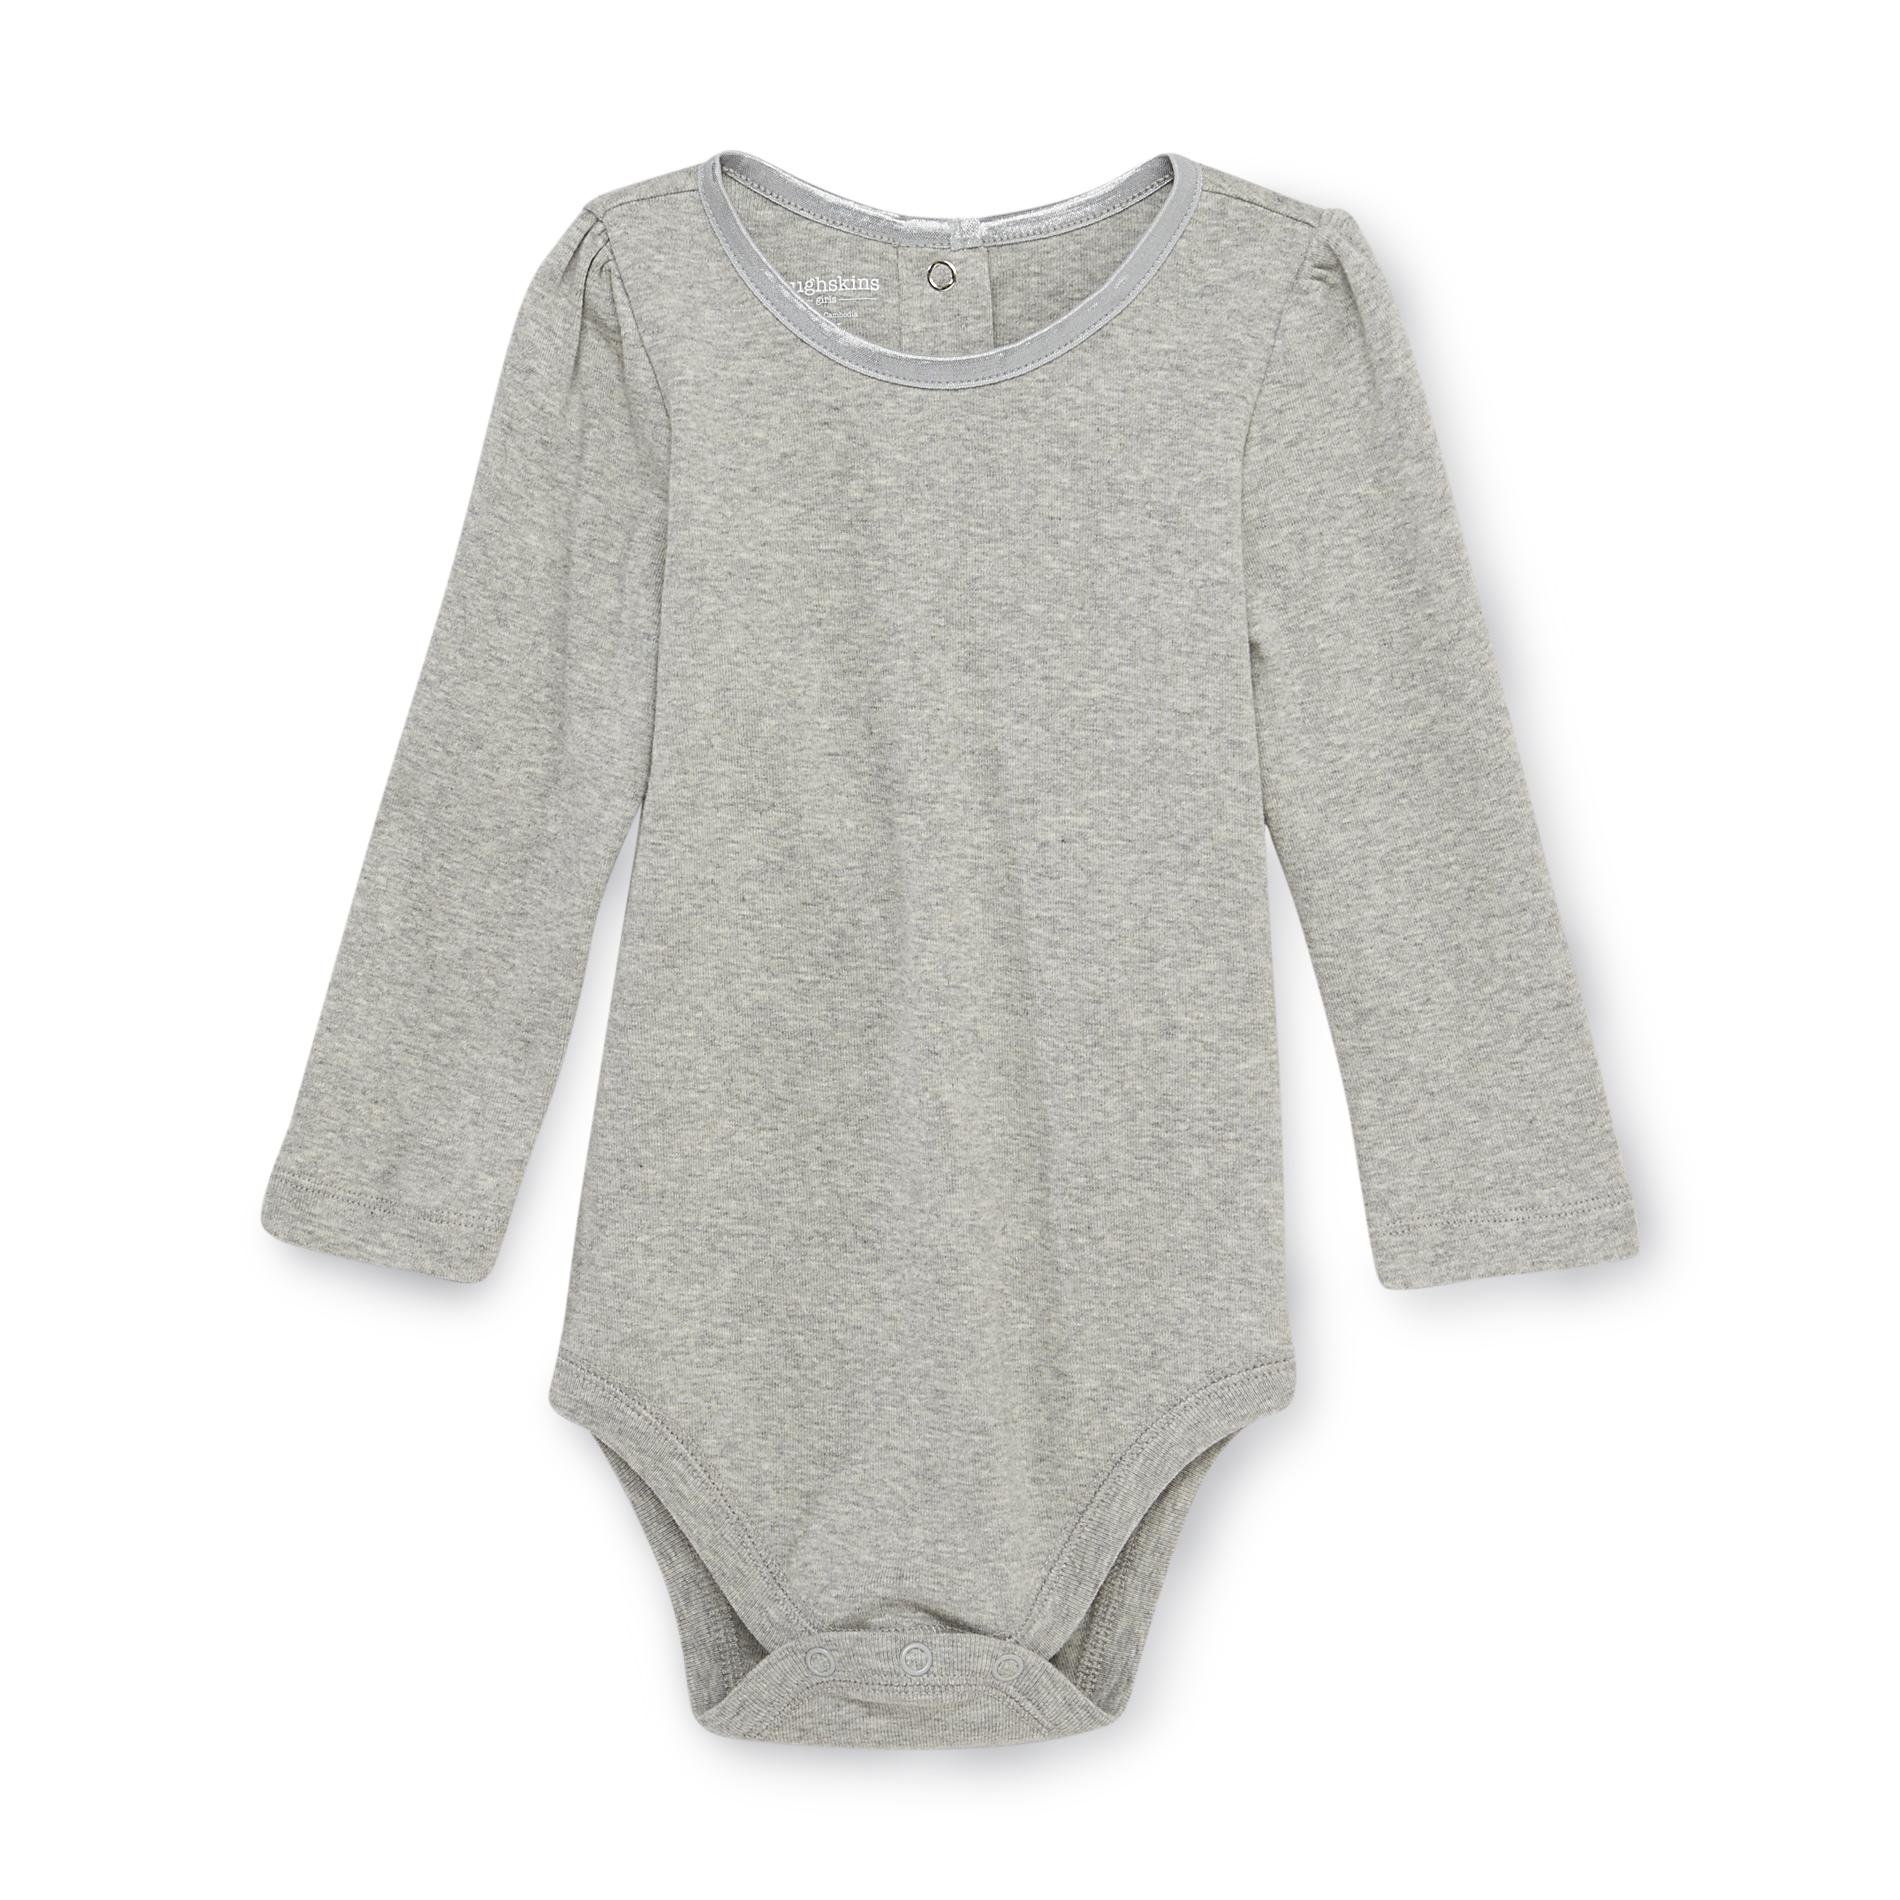 Toughskins Infant Girl's Long-Sleeve Bodysuit